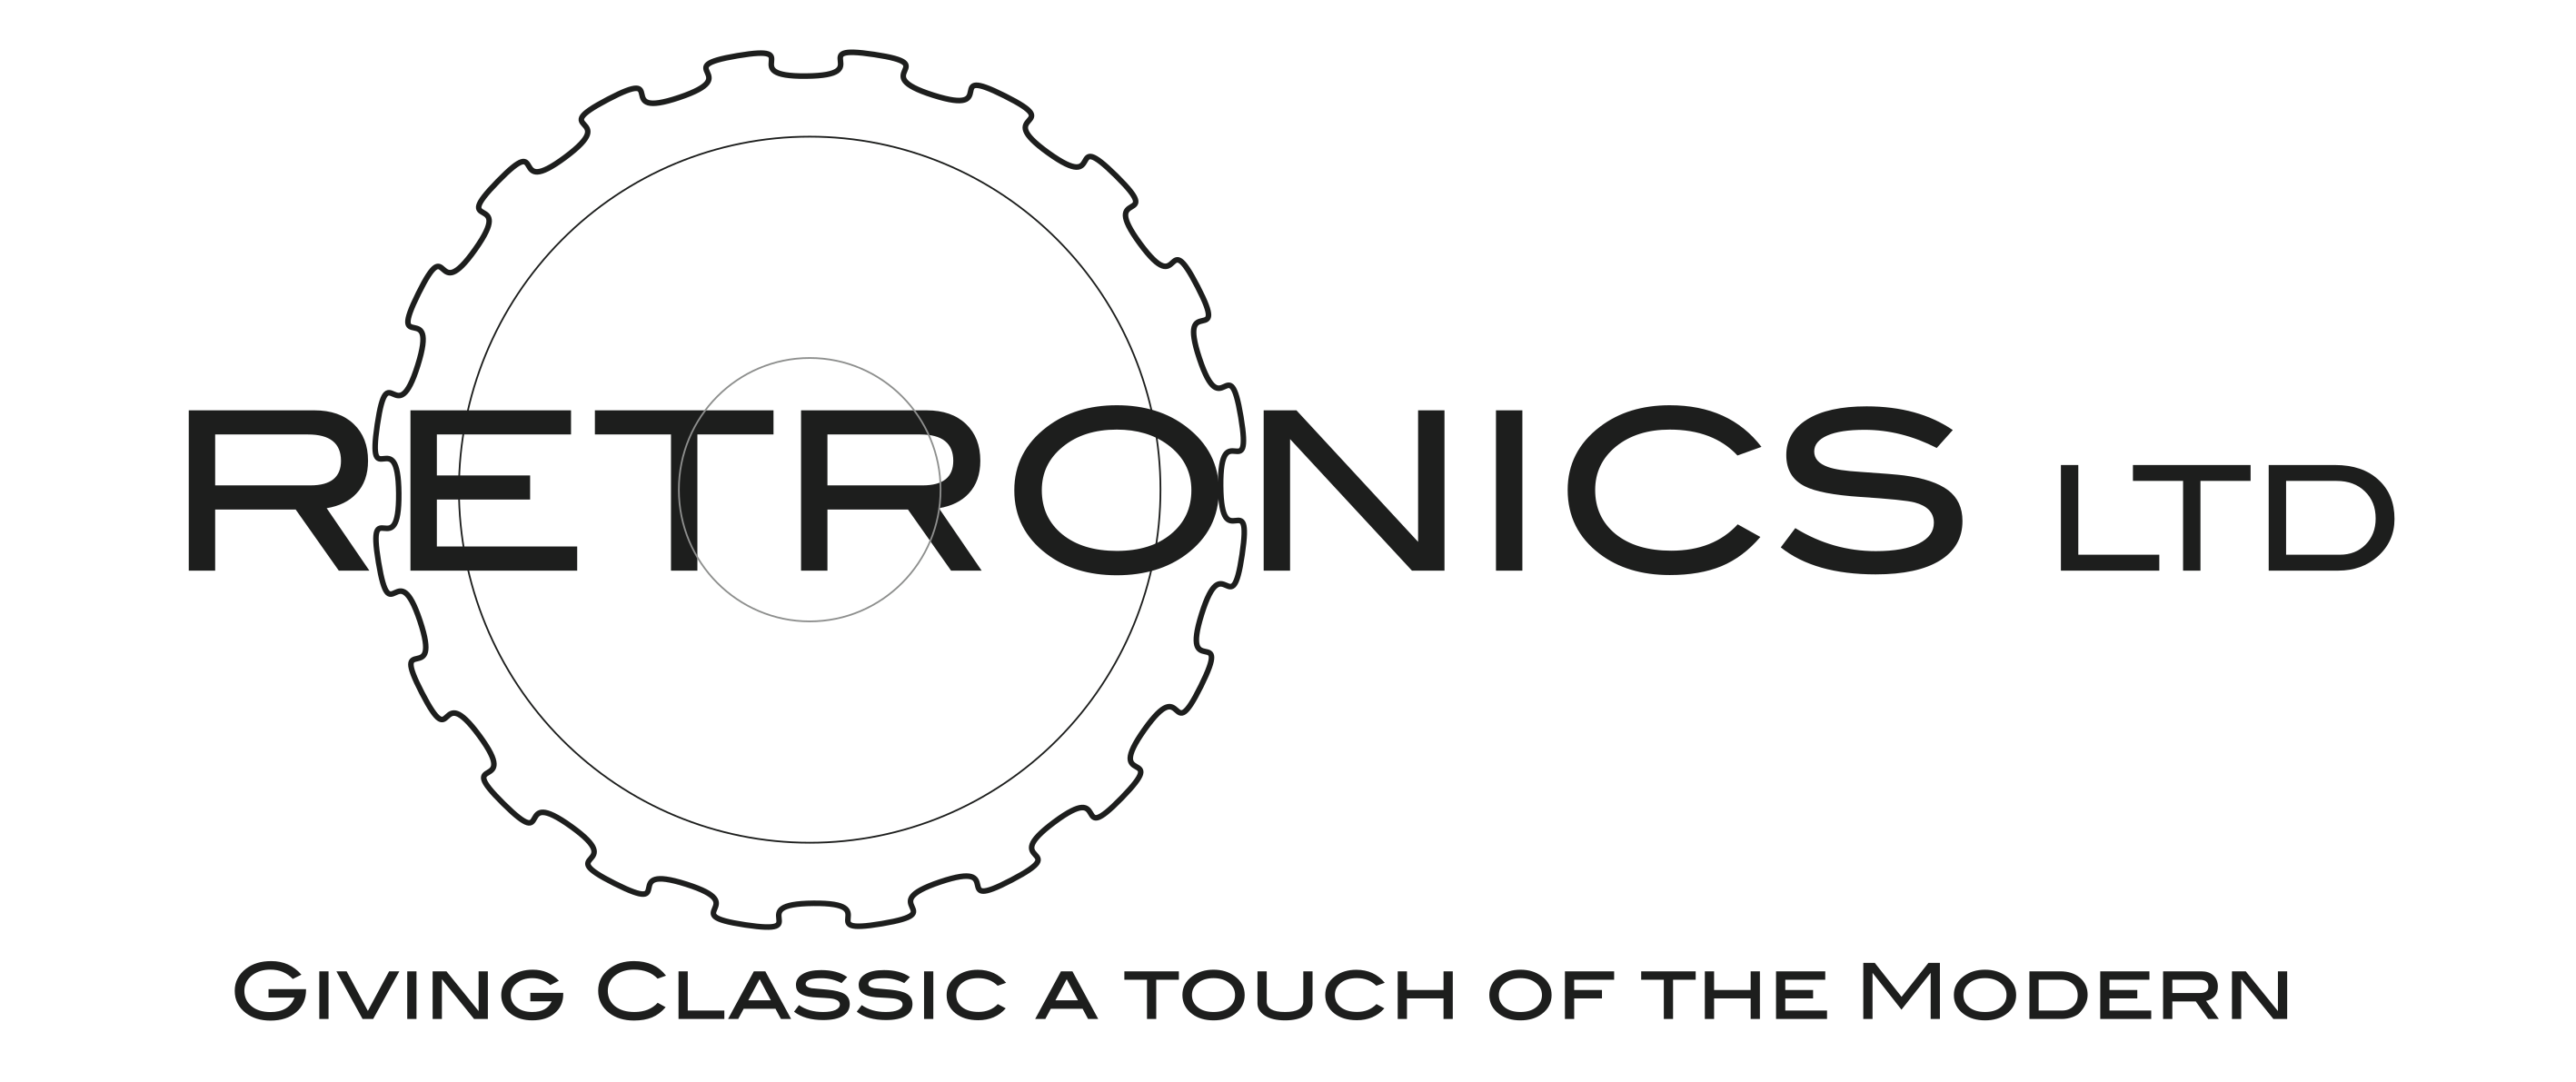 Retronics Ltd